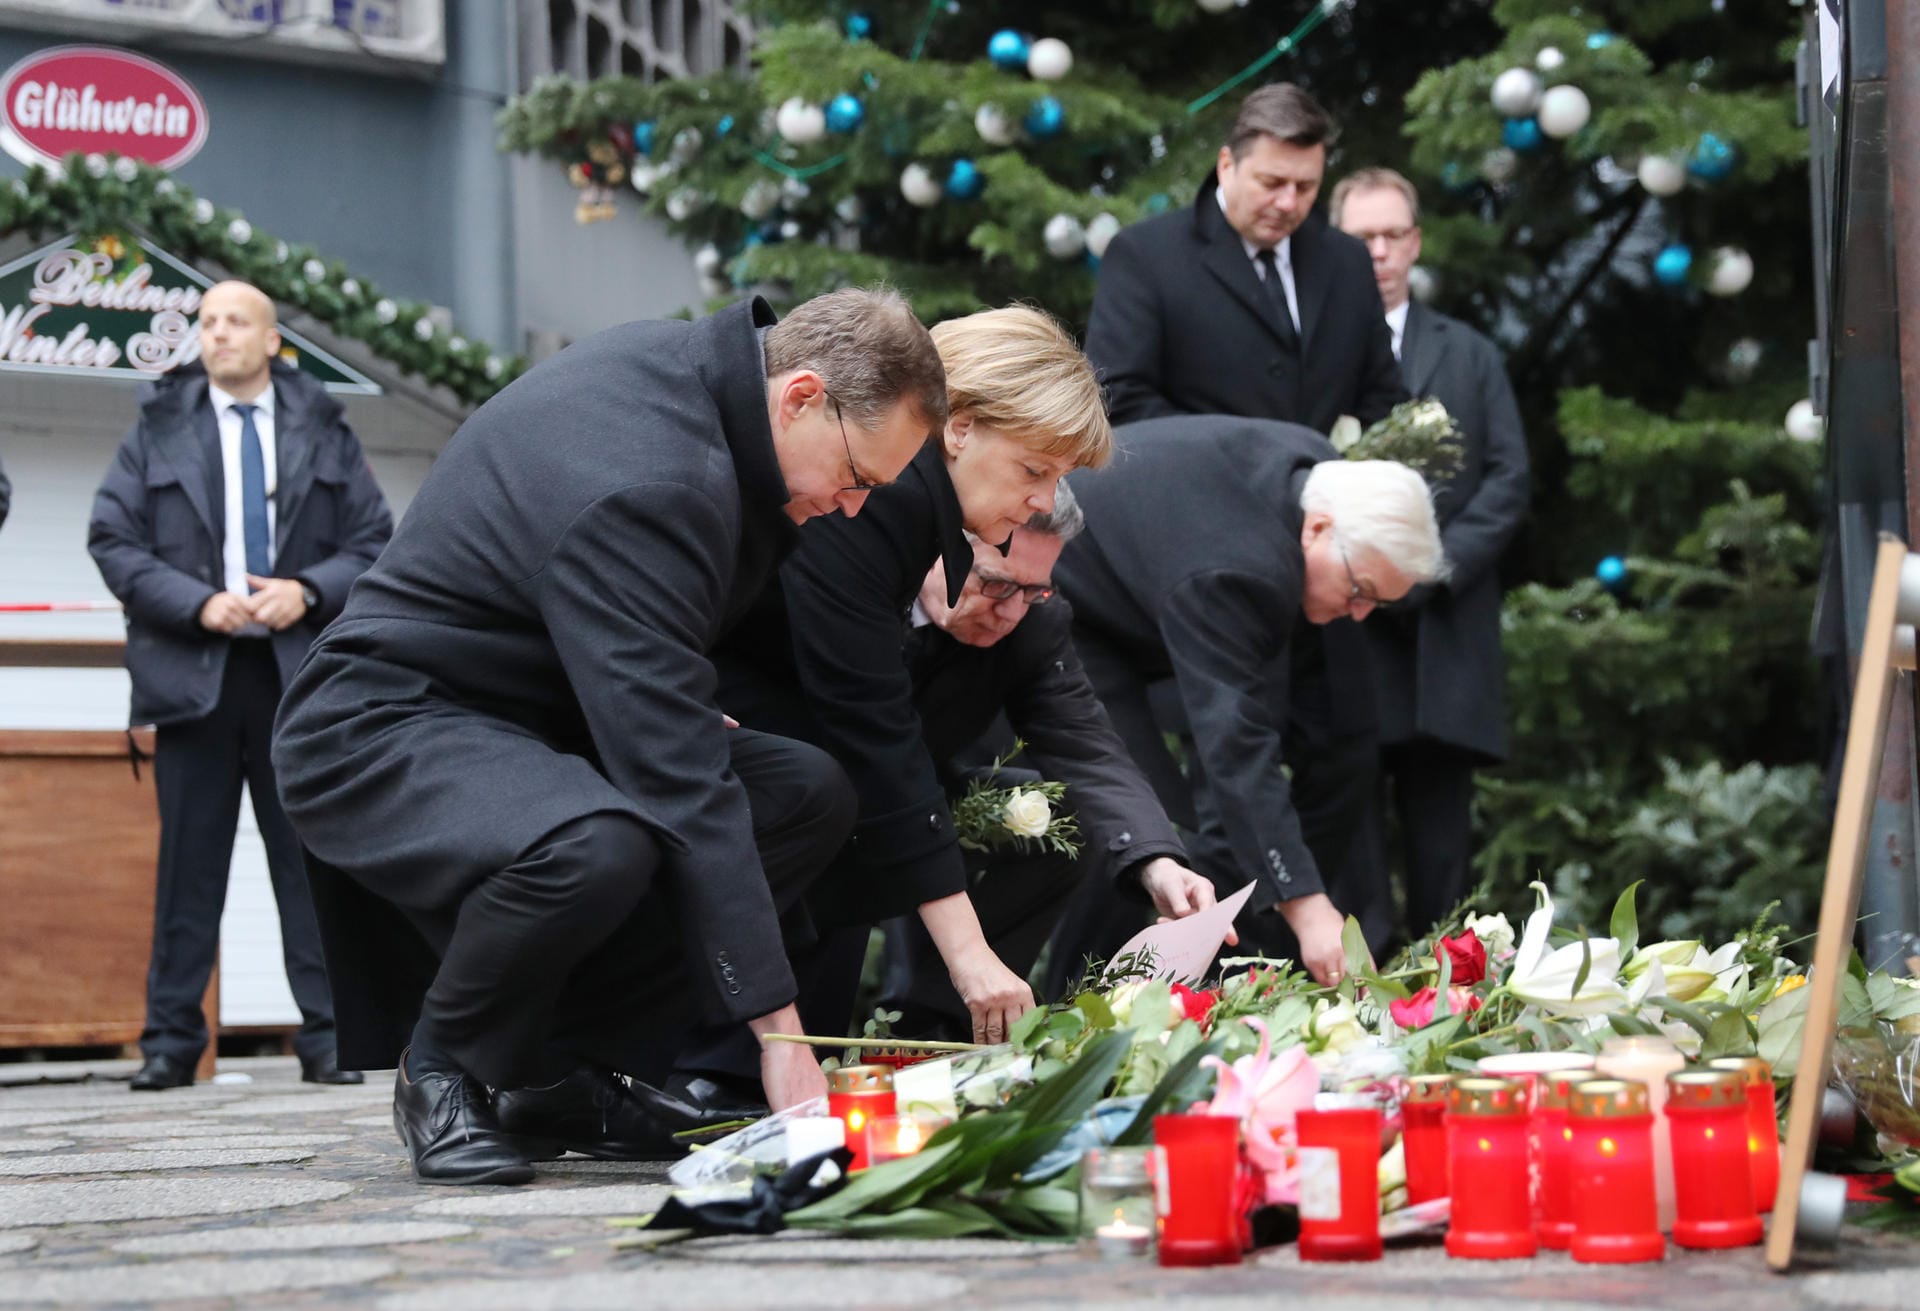 Wenig später besuchten Bundeskanzlerin Angela Merkel, Innenminister Thomas de Maizière, Außenminister Frank-Walter Steinmeier und Berlins Regierender Bürgermeister Michael Müller den Anschlagsort und gedachten der Opfer.